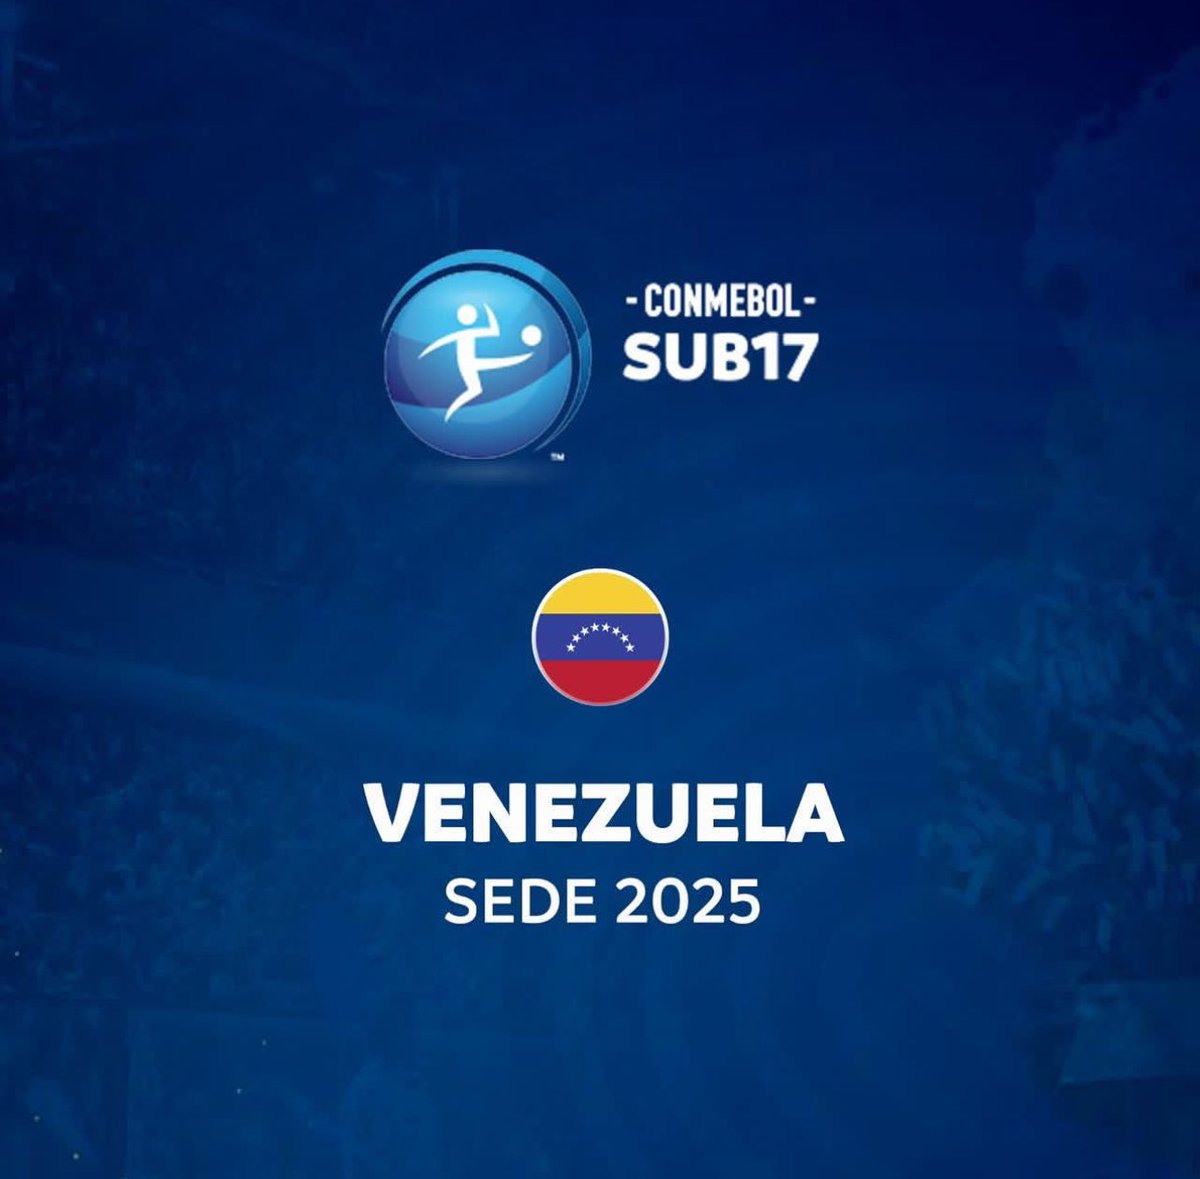 El sudamericano Sub 17 se realizará en Venezuela en 2025. Así lo oficializó Conmebol.